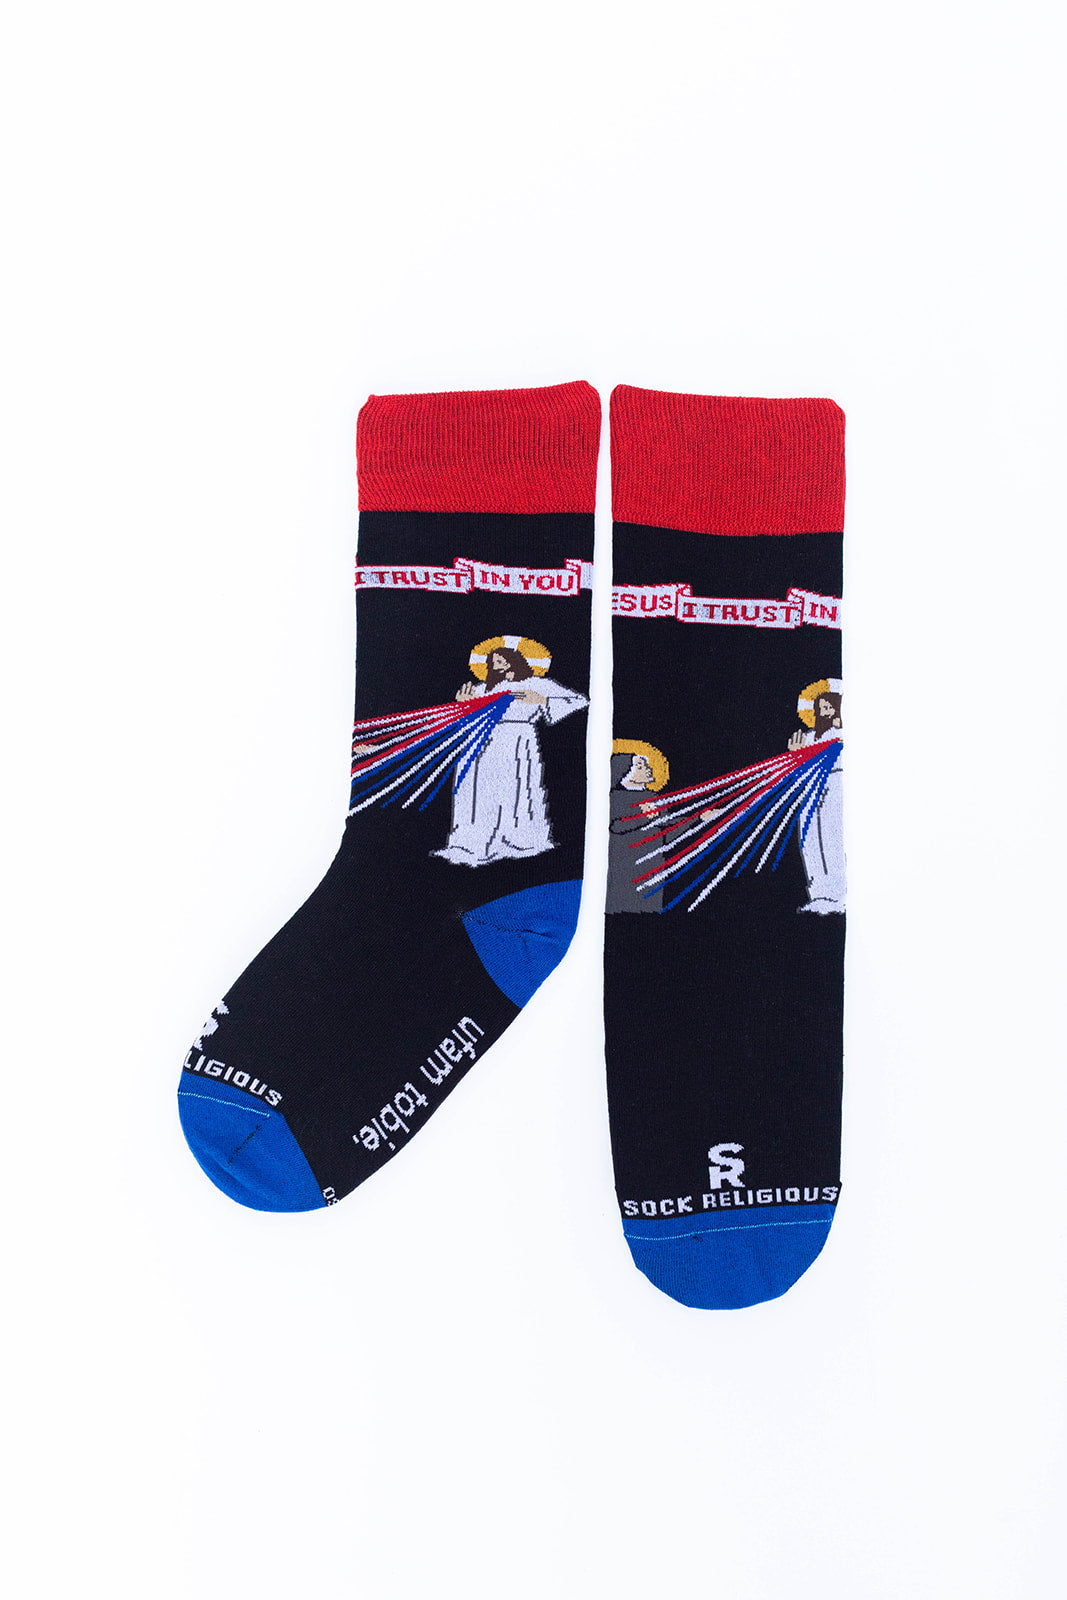 St. Faustina Adult Socks